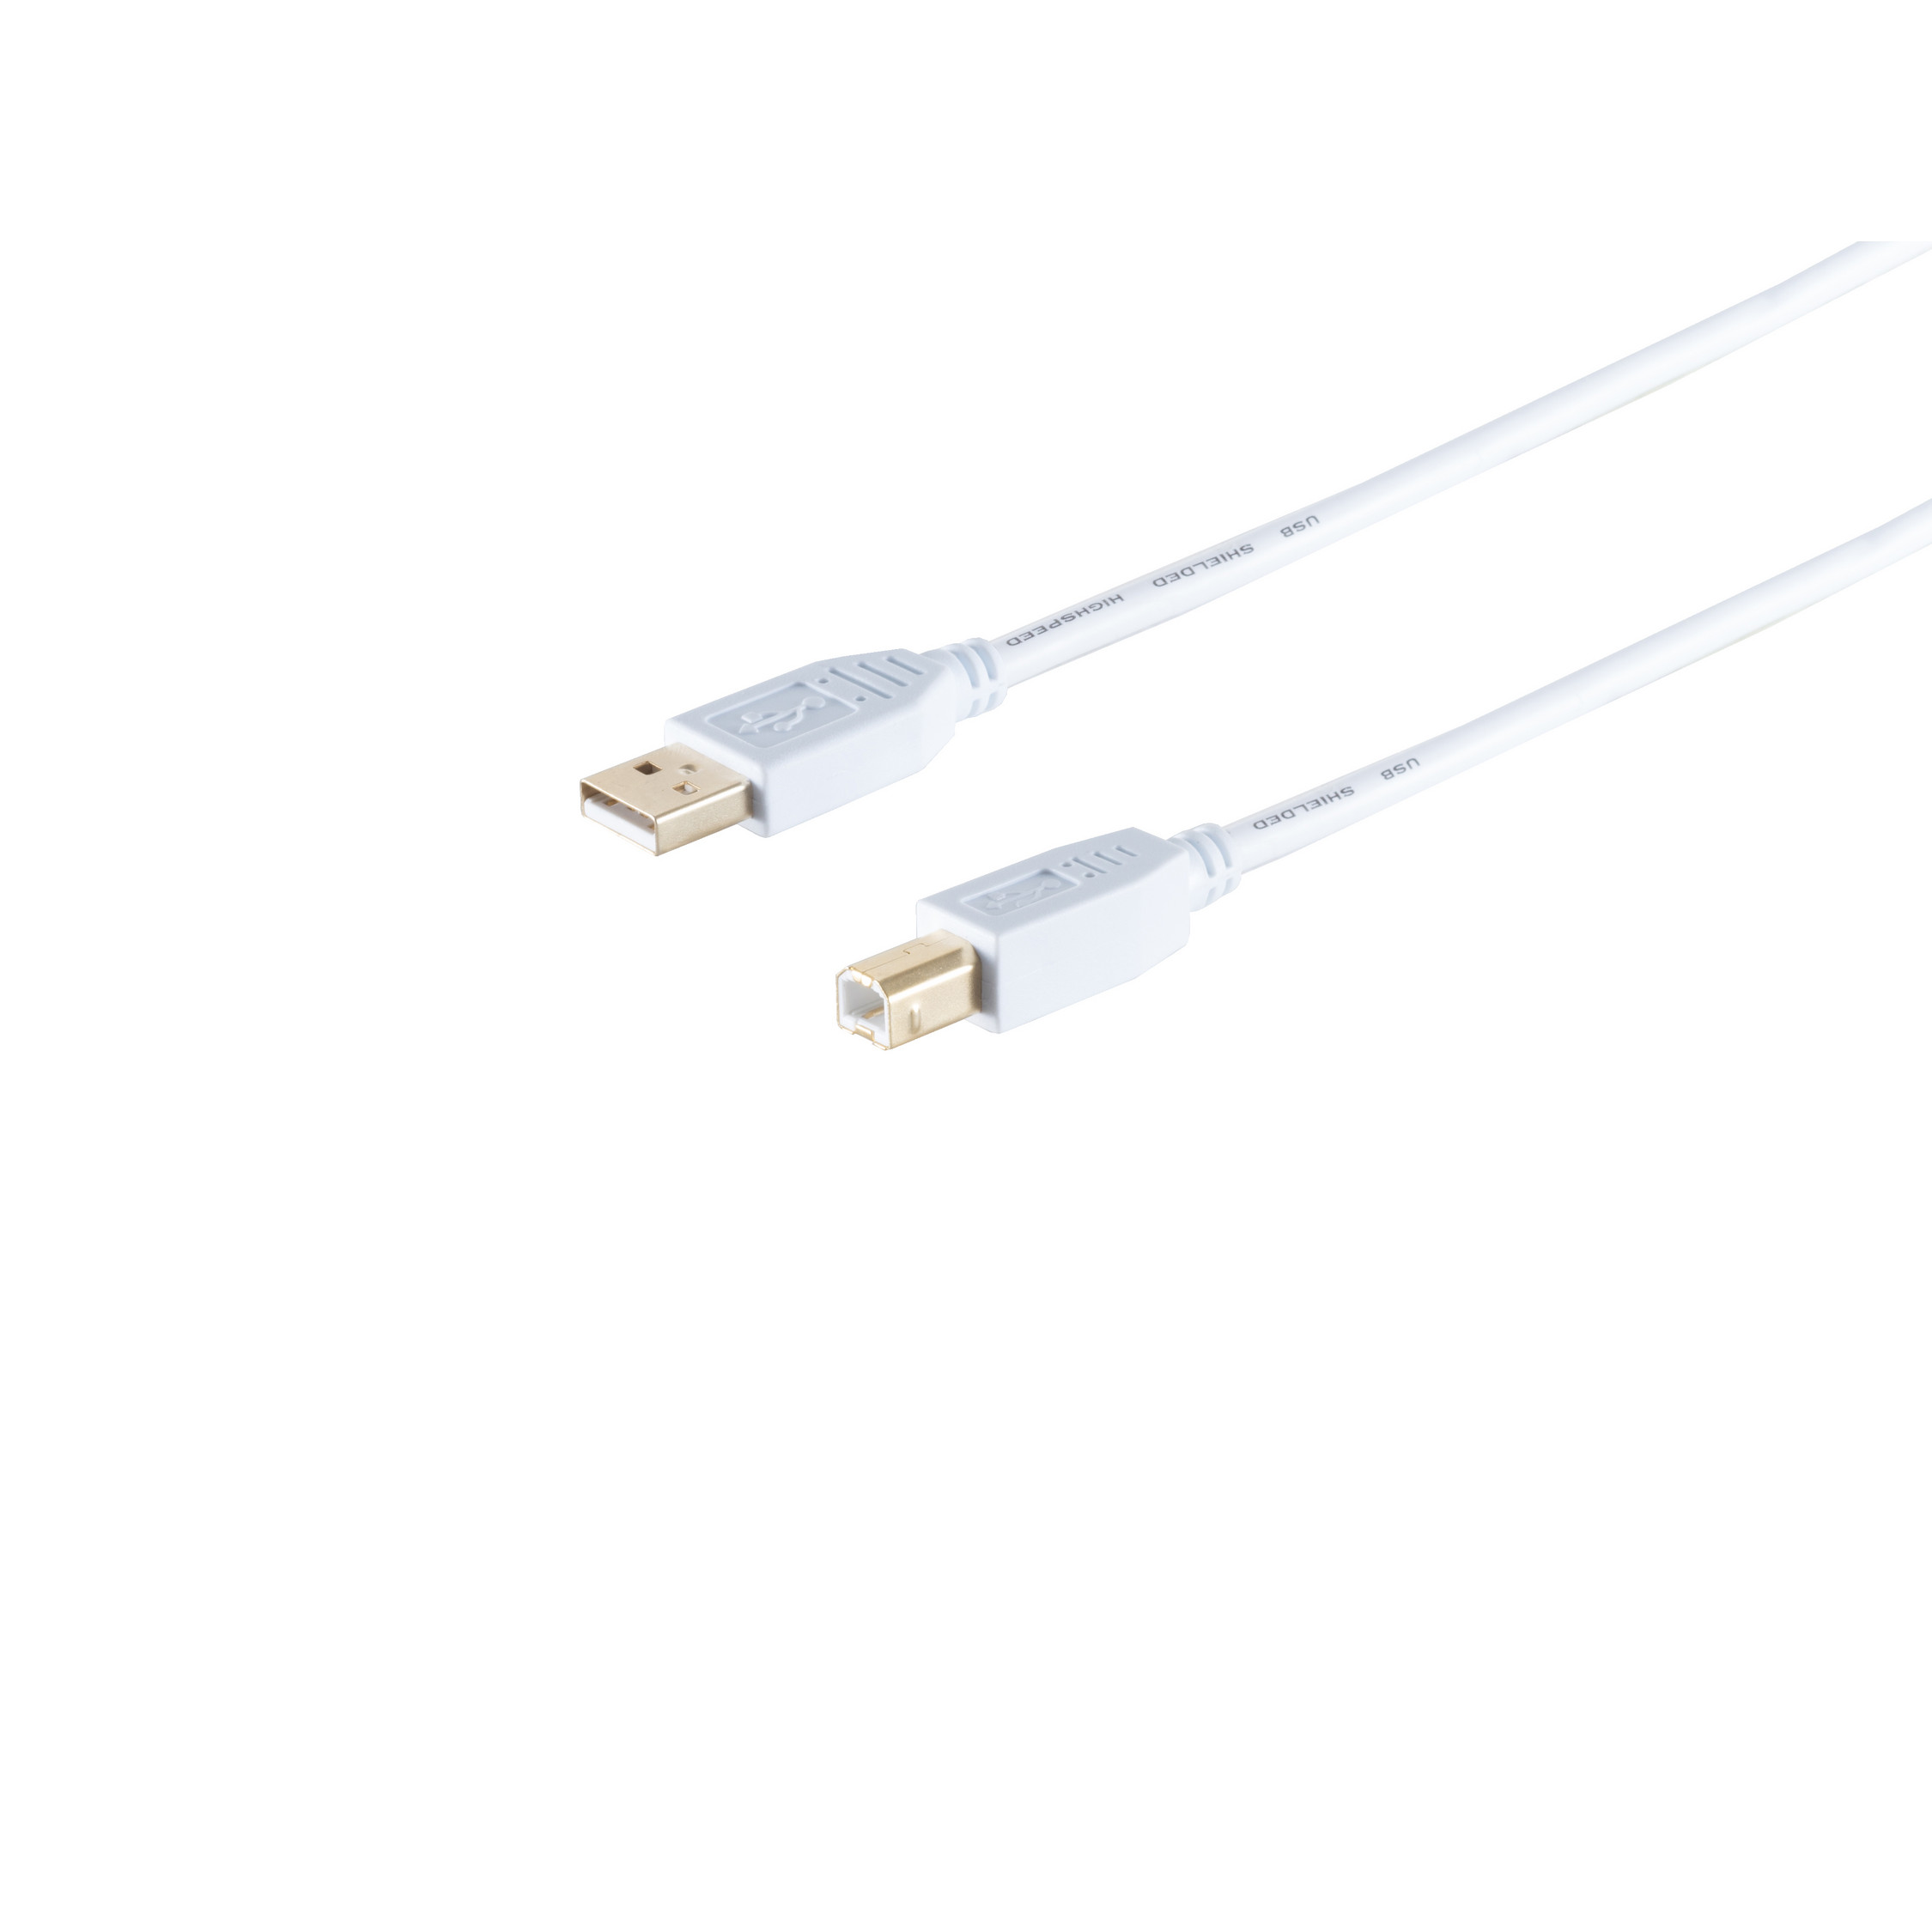 S/CONN MAXIMUM CONNECTIVITY USB weiß, Kabel Kabel, A/B Speed 2.0, 2.0 USB USB 1,0m High Stecker